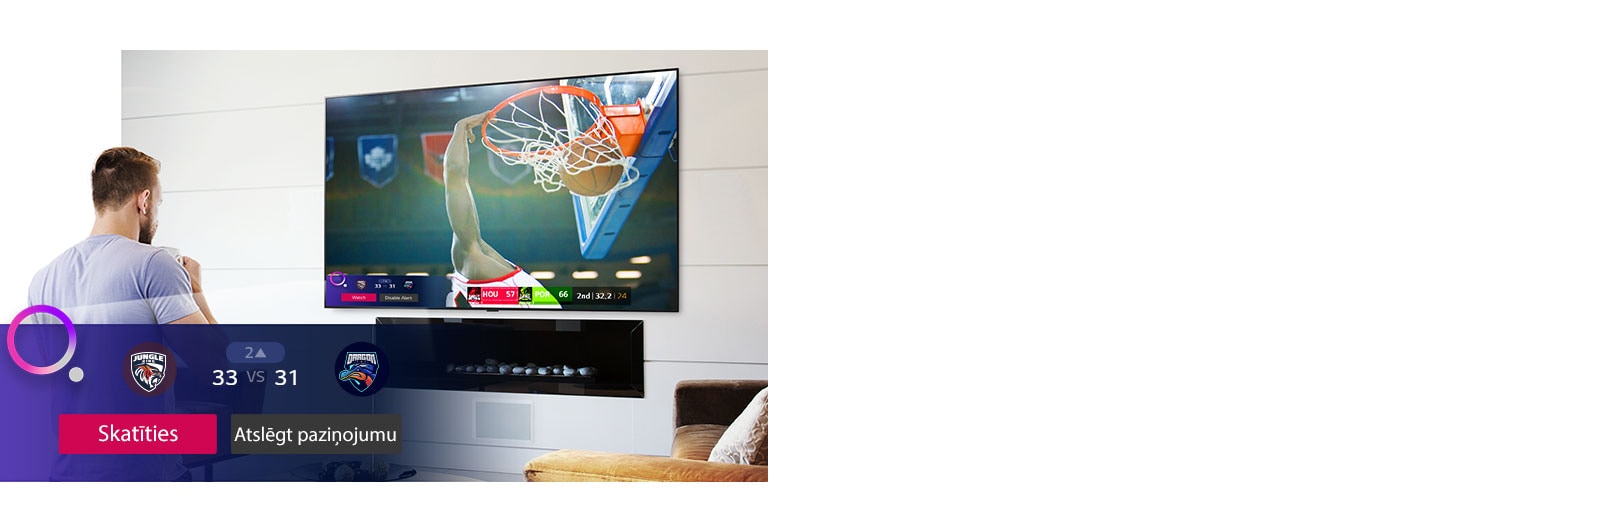 Lo schermo TV mostra una scena di una partita di basket e un promemoria sportivo